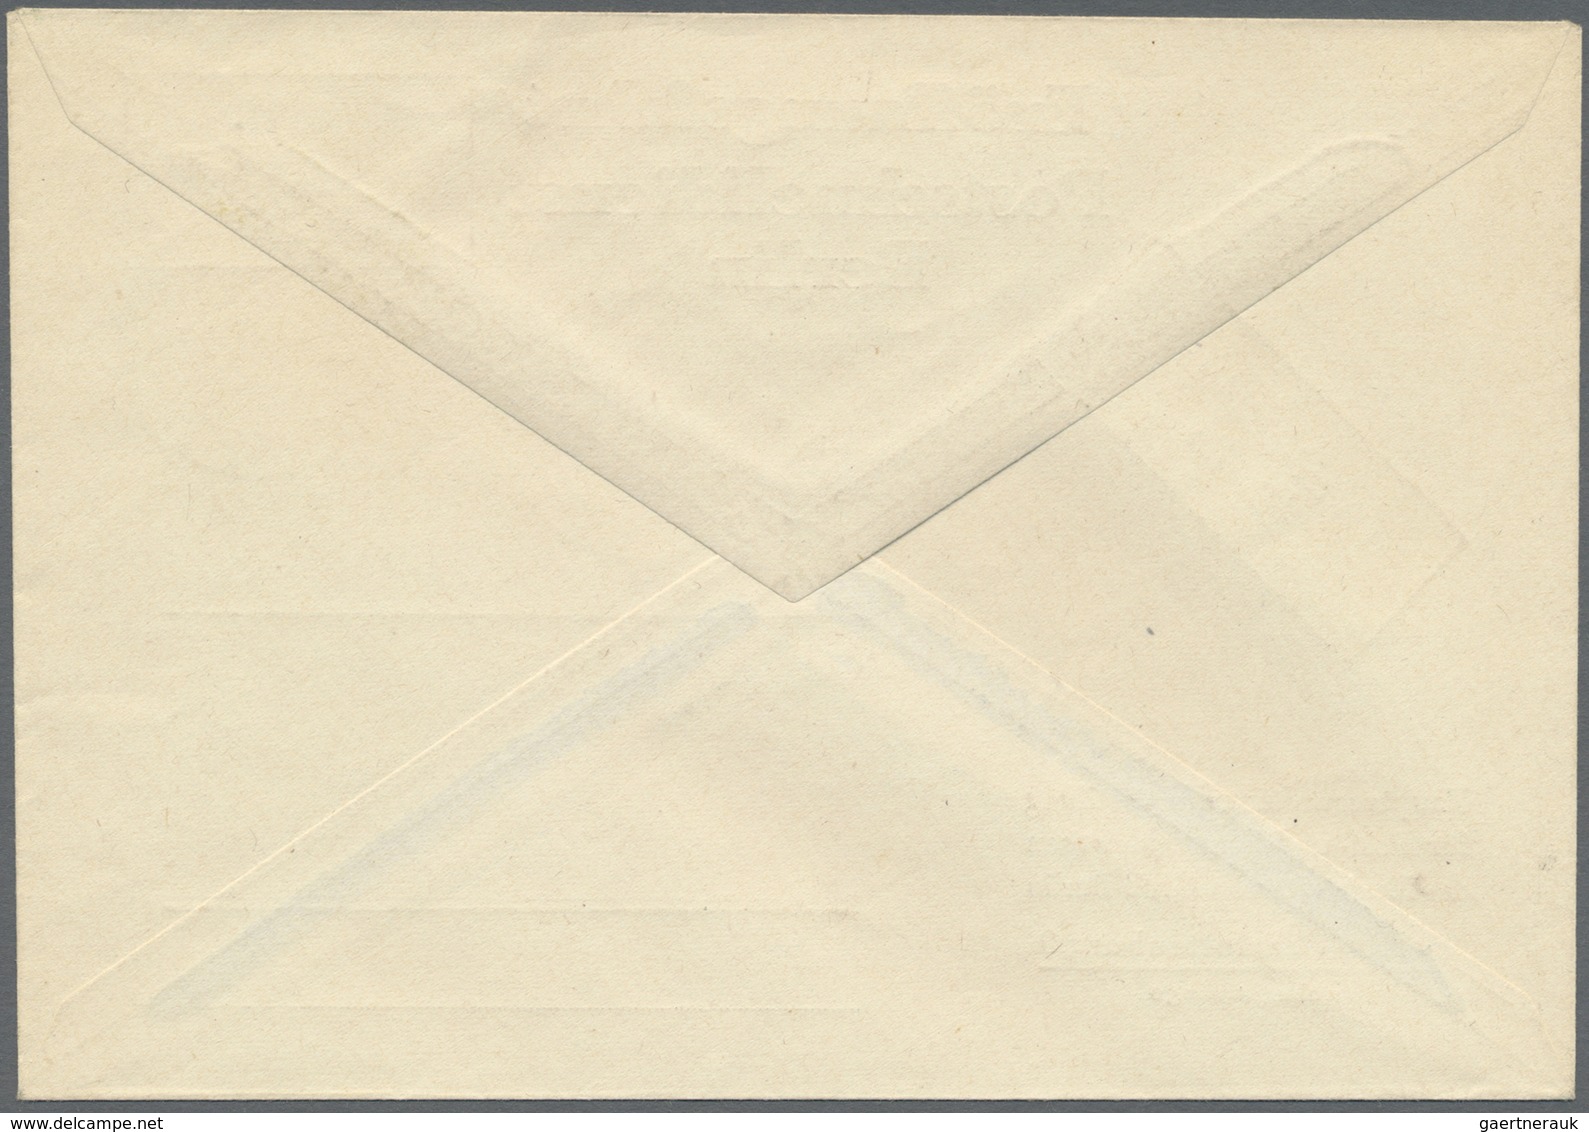 Br Berlin - Postschnelldienst: 1949,1.3.: Amtlicher Umschlag Zur Eröffnung Des Postschnelldienst Mit 1. - Storia Postale